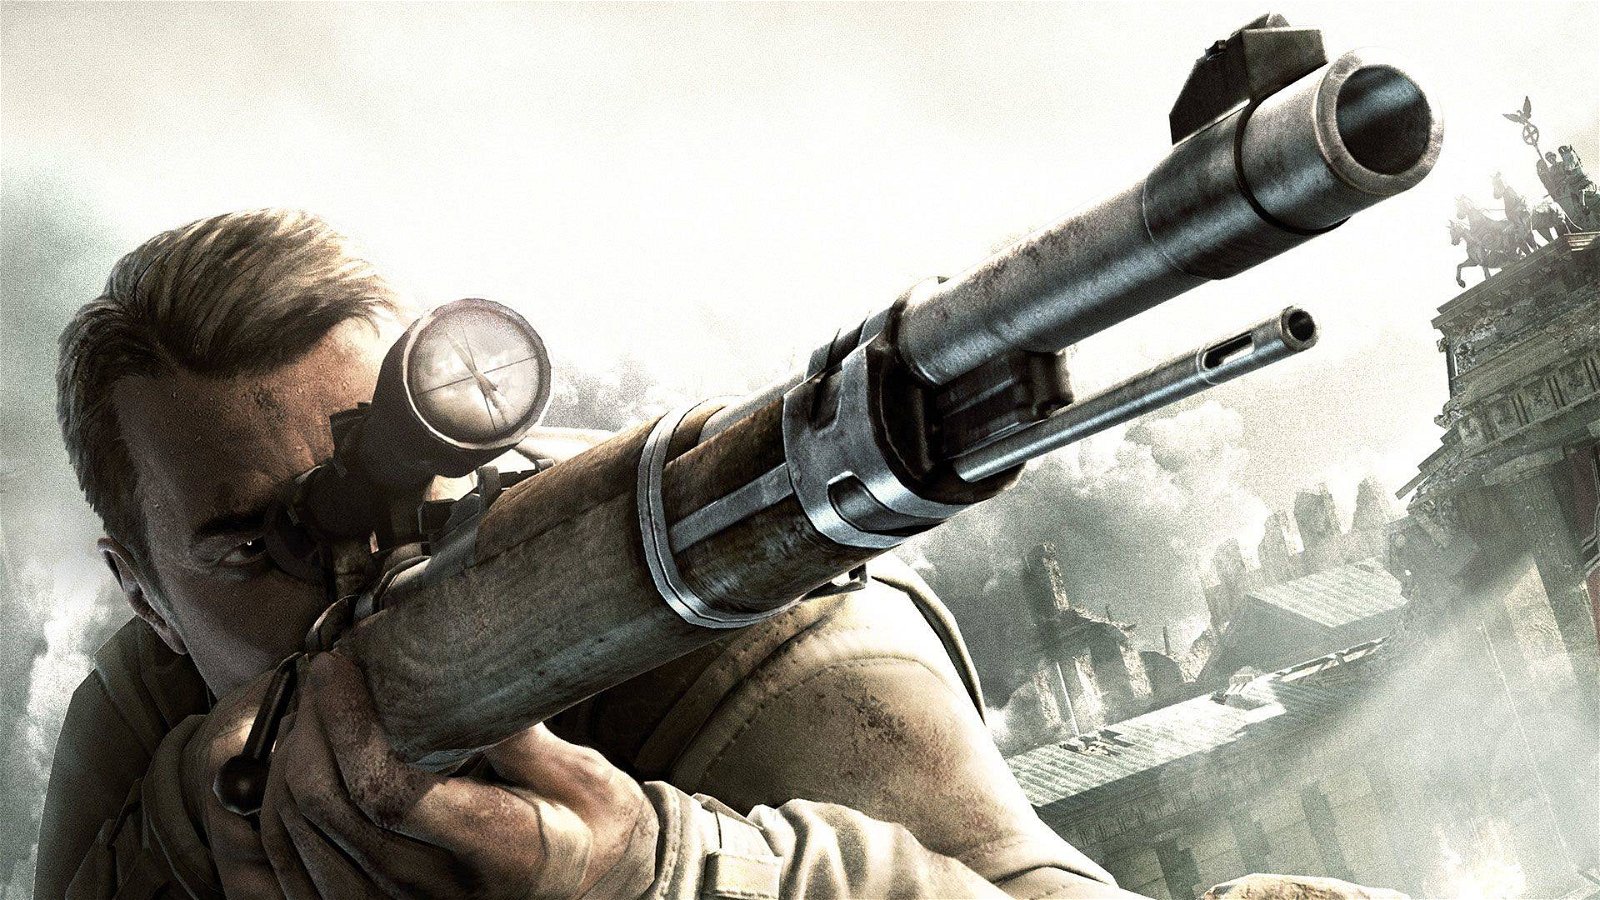 Immagine di Sniper Elite V2 Remastered: compare un trailer per sbaglio